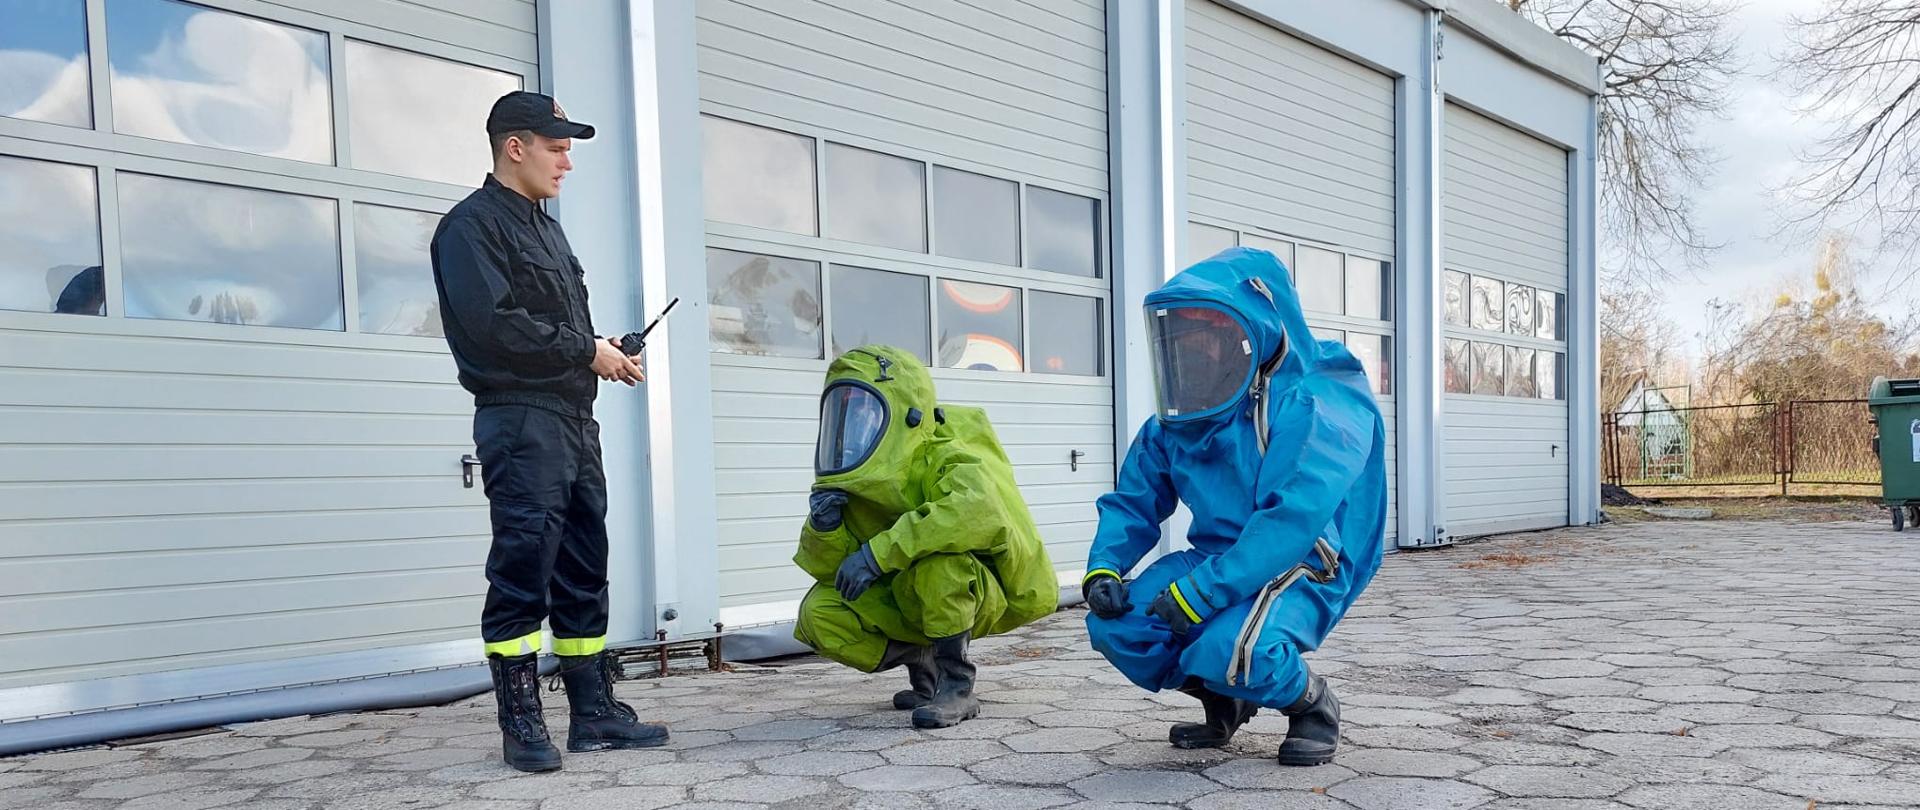 Na zdjęciu widnieją strażacy w trakcie kursu z zakresu ratownictwa chemiczno ekologicznego. Zajęcia odbywają się na zewnątrz pomieszczenia, jest dzień i słonecznie. 